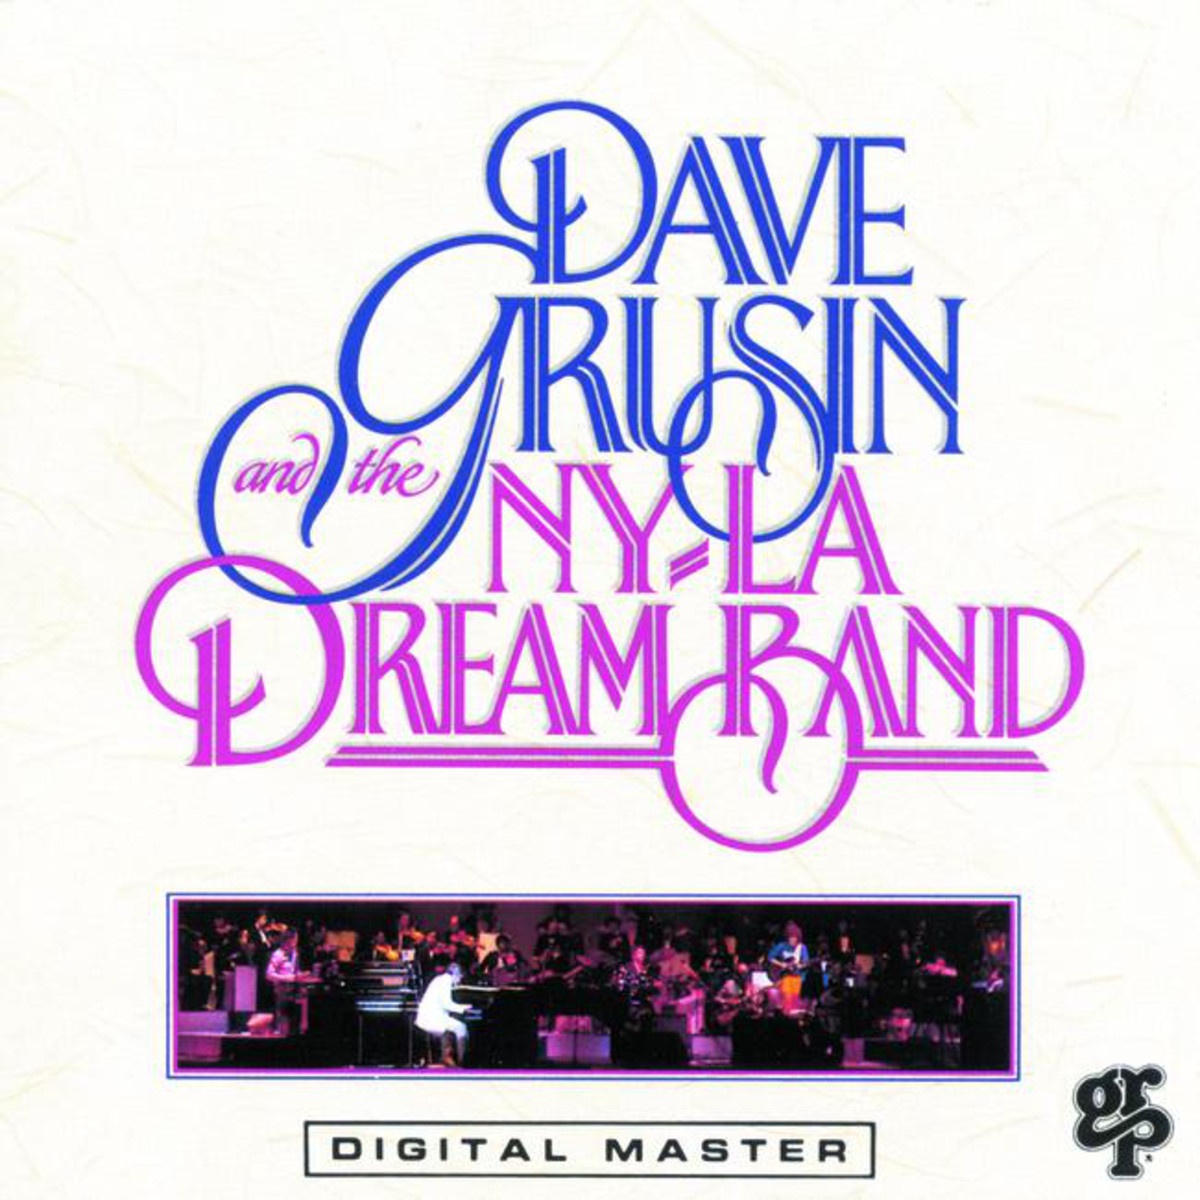 Dave Grusin and the NY-LA Dream Band